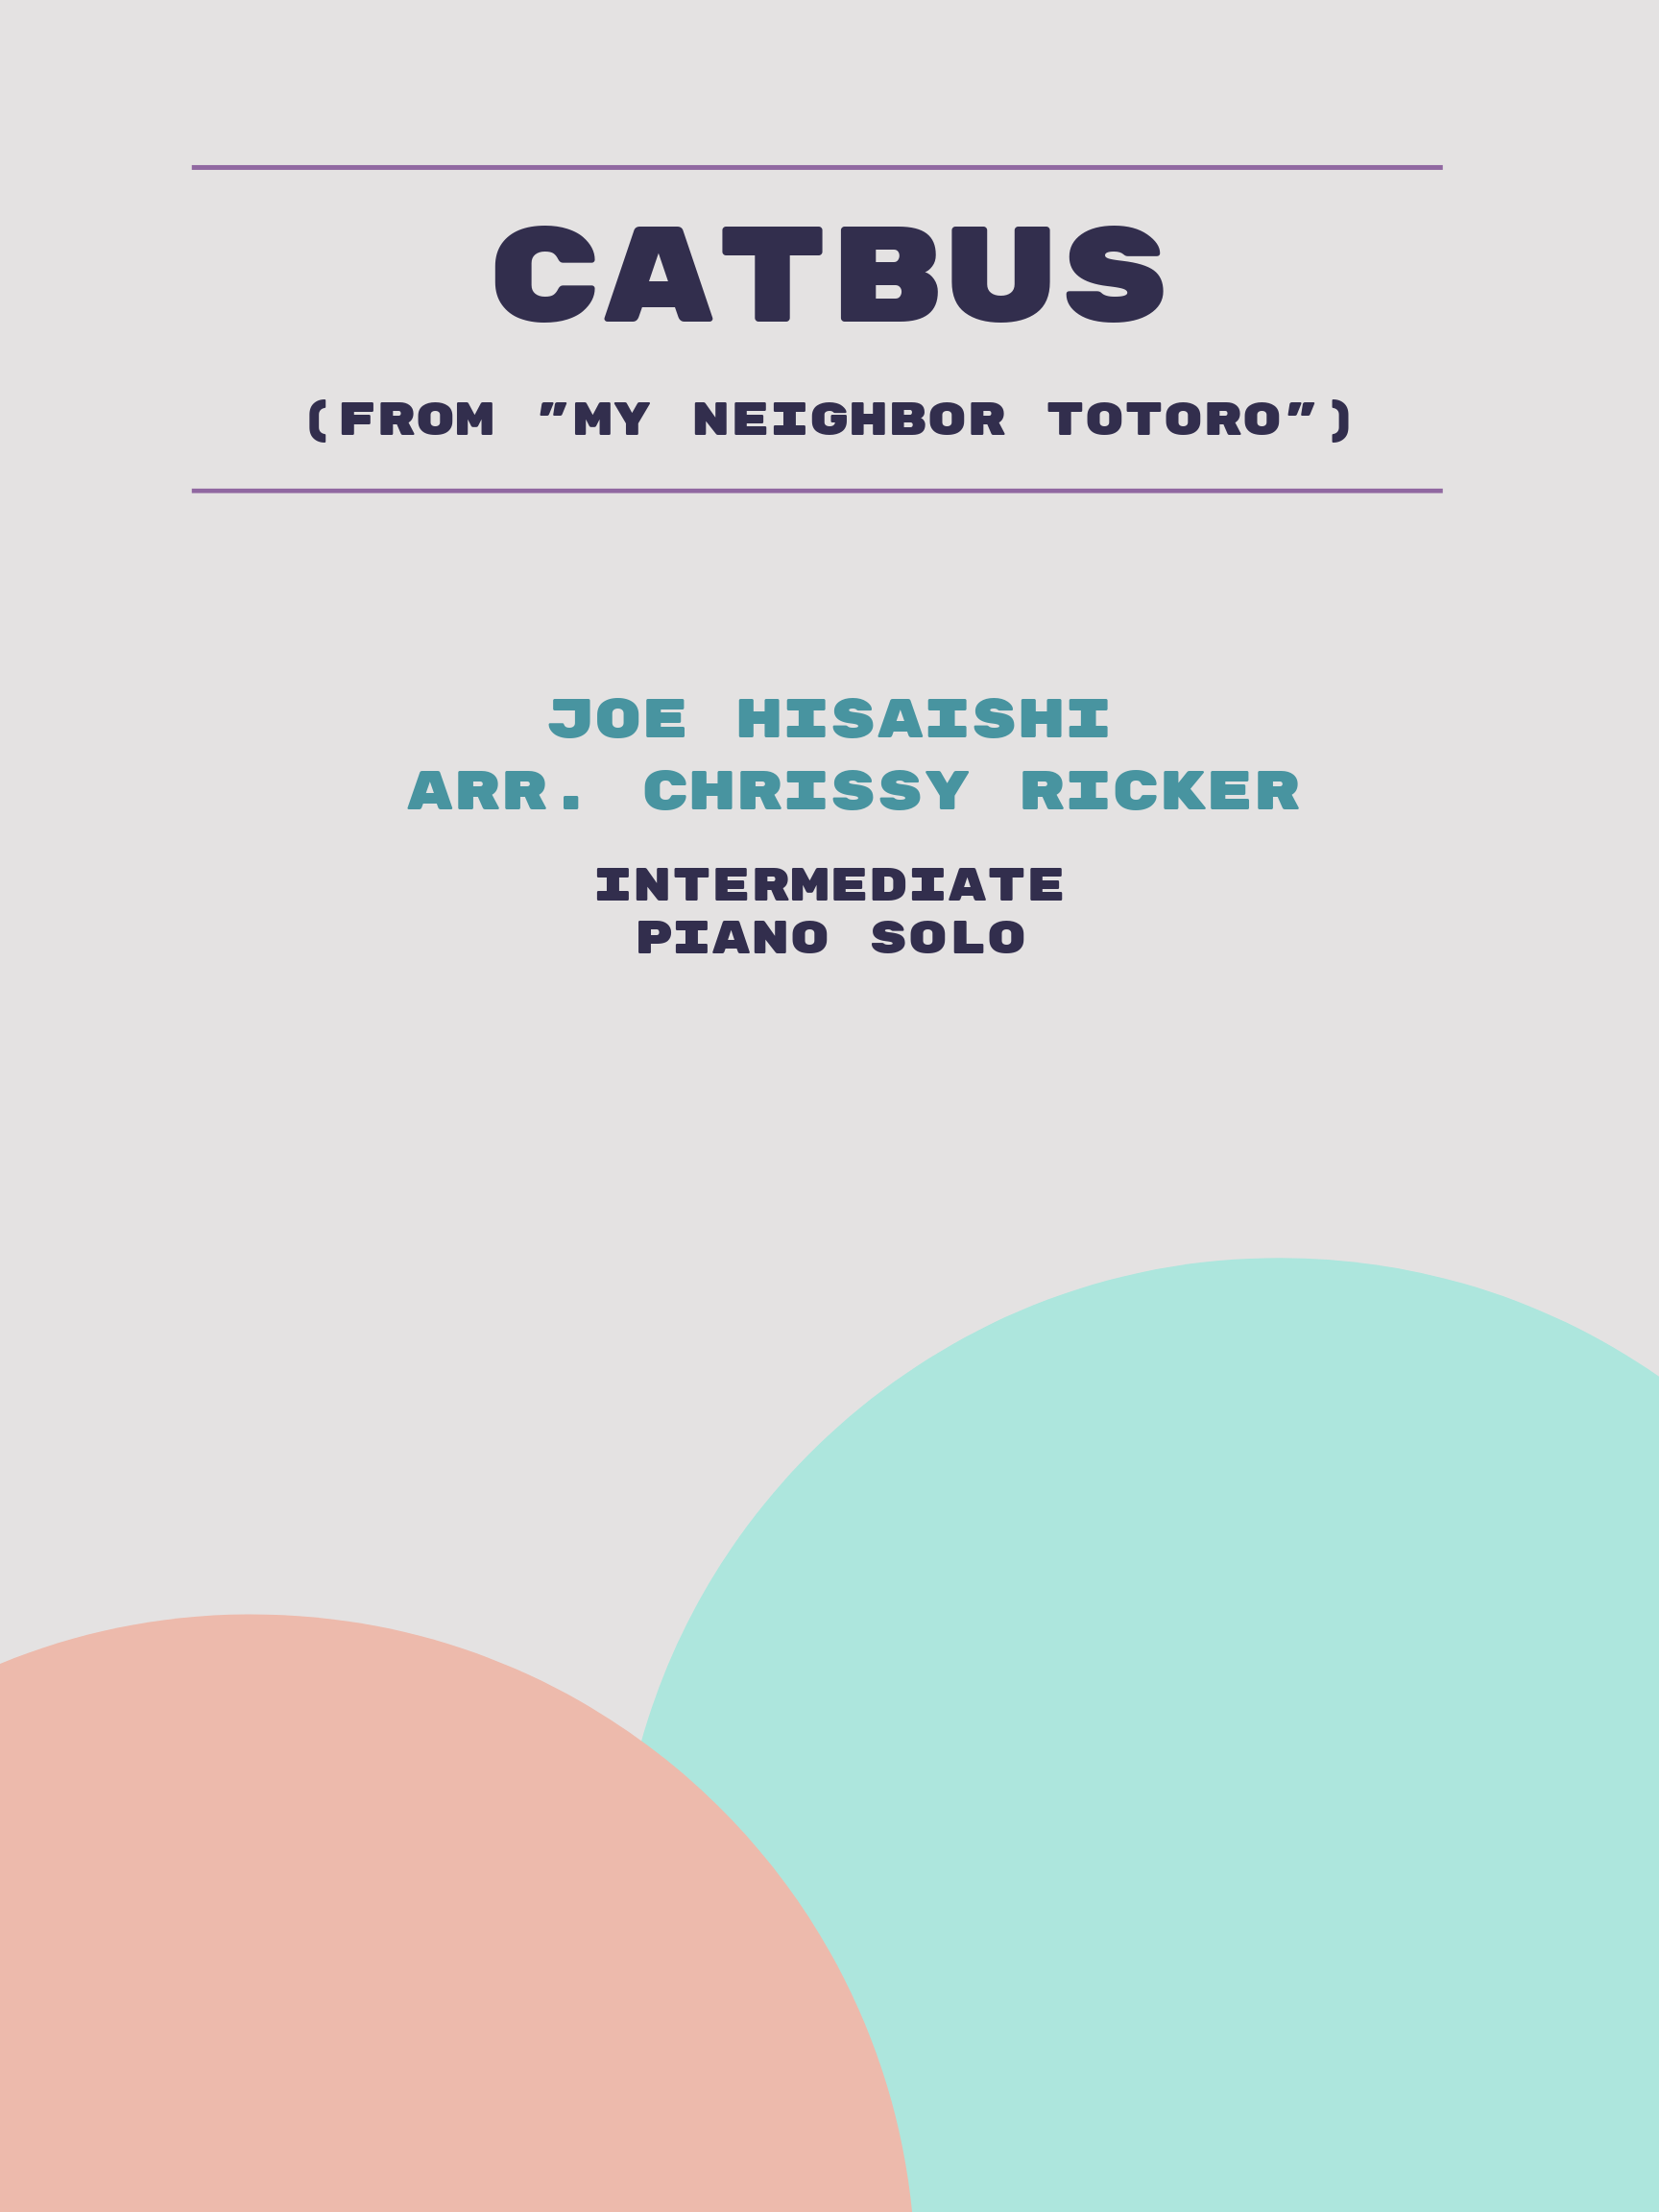 Catbus by Joe Hisaishi